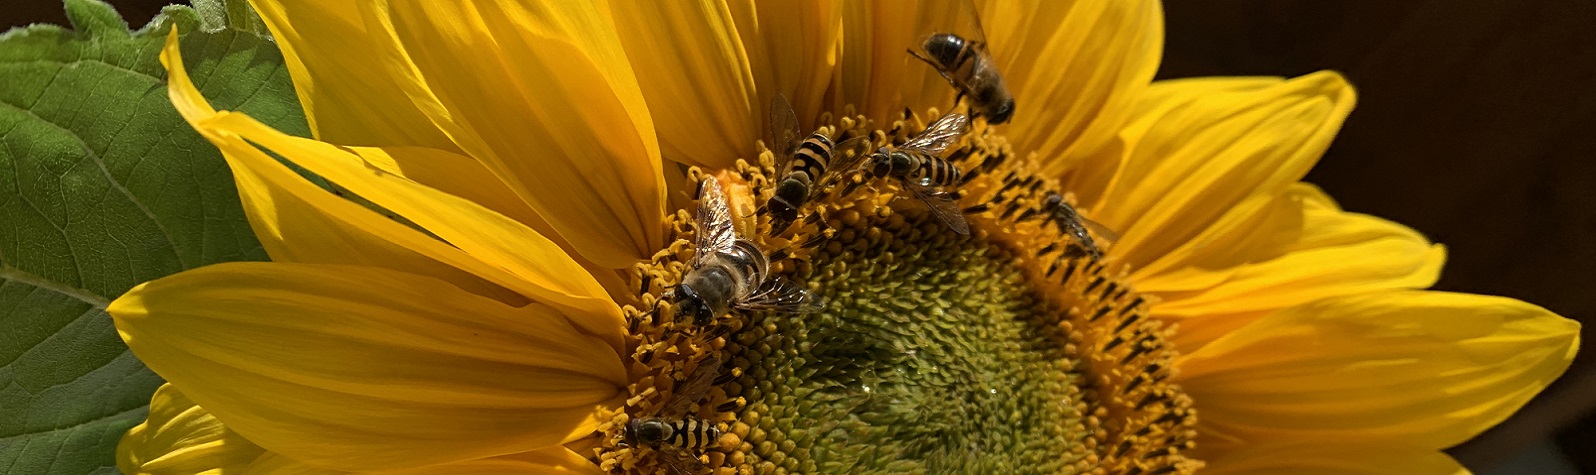 Bienen auf der Sonnenblume - Slide 2